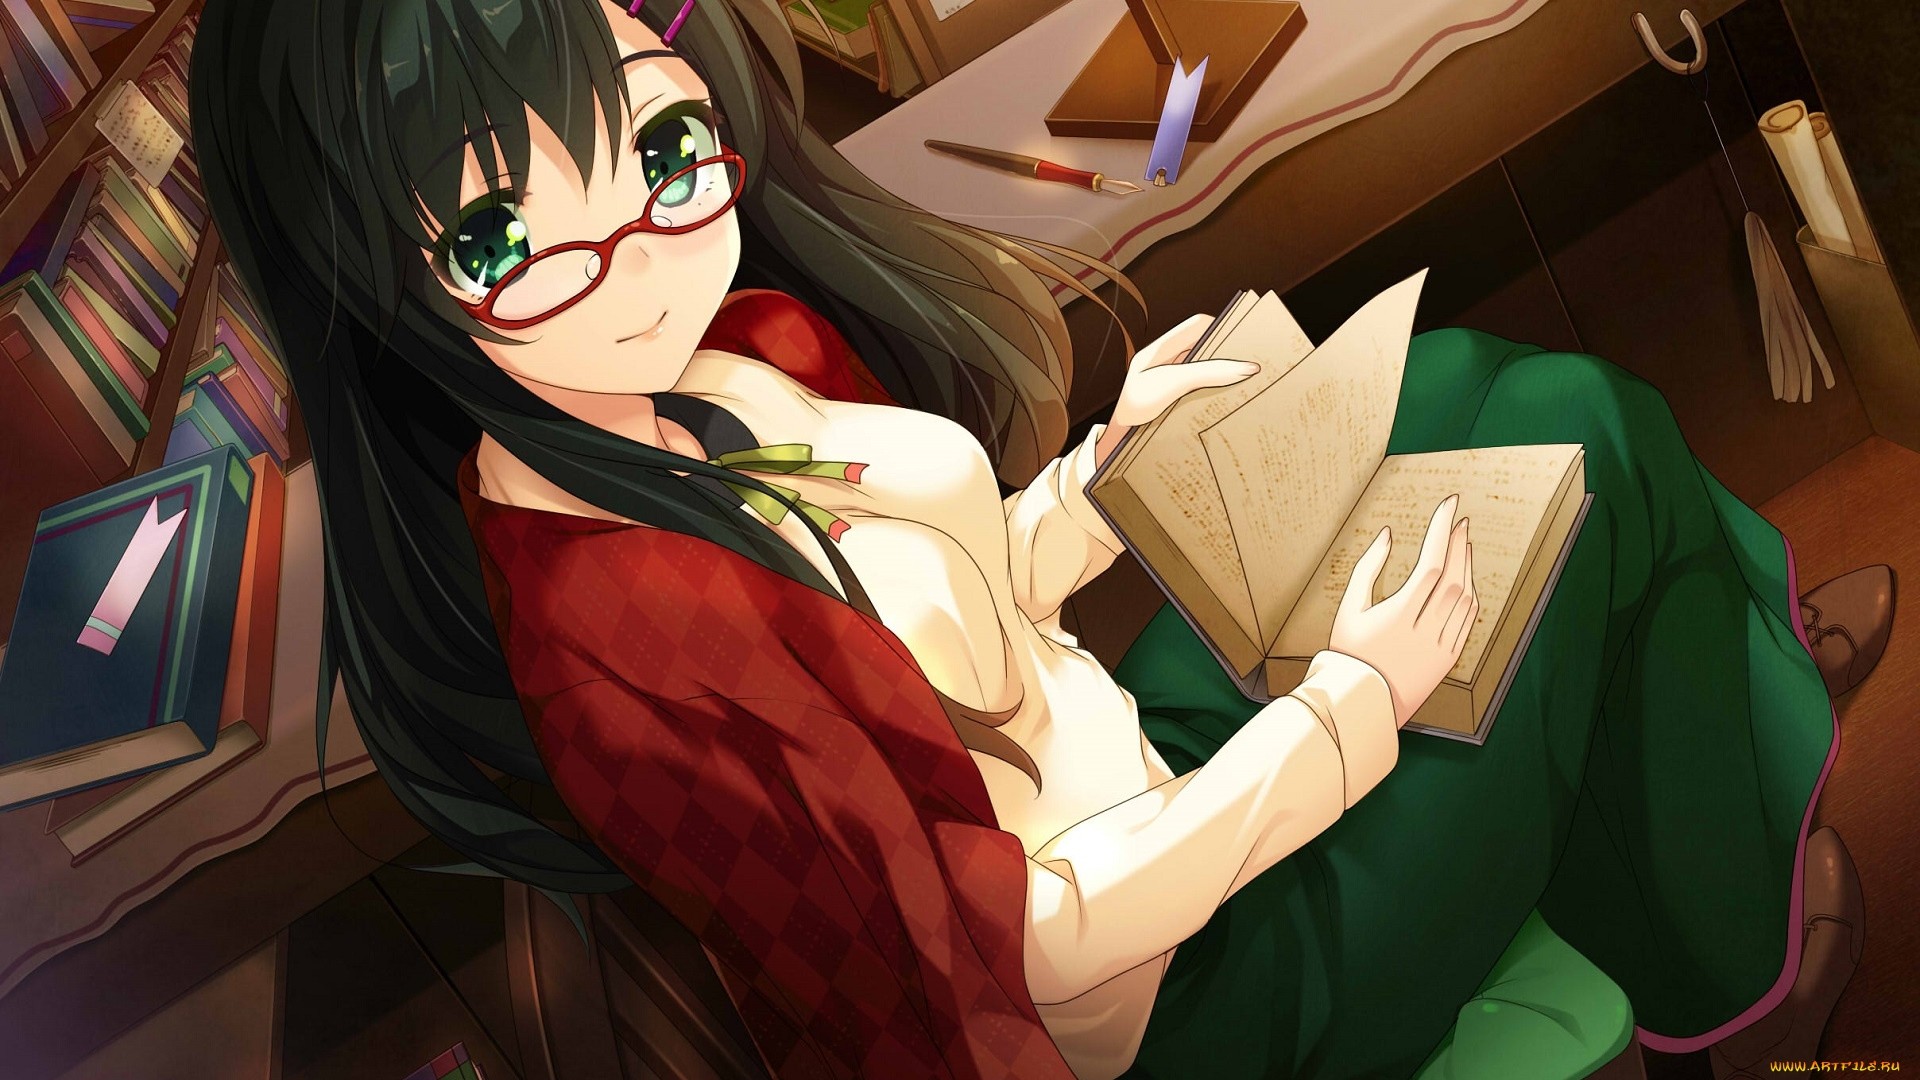 Anime Girl With Glasses Desktop wallpaper